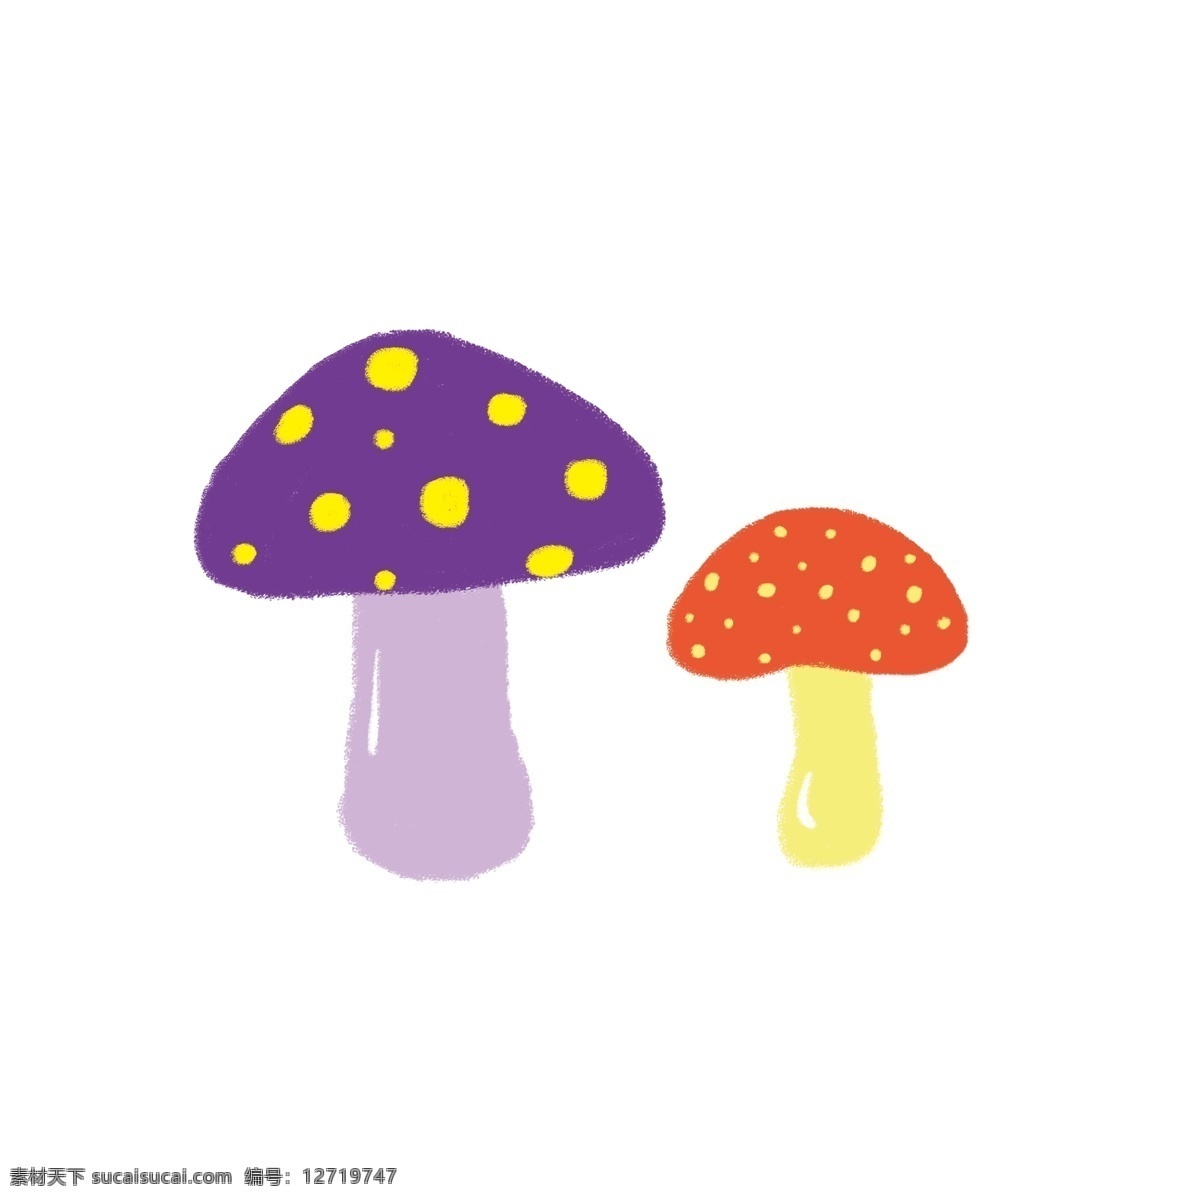 原创 手绘 卡通 蘑菇 真菌 食物 手绘蘑菇 卡通蘑菇 厨房 森林 树林